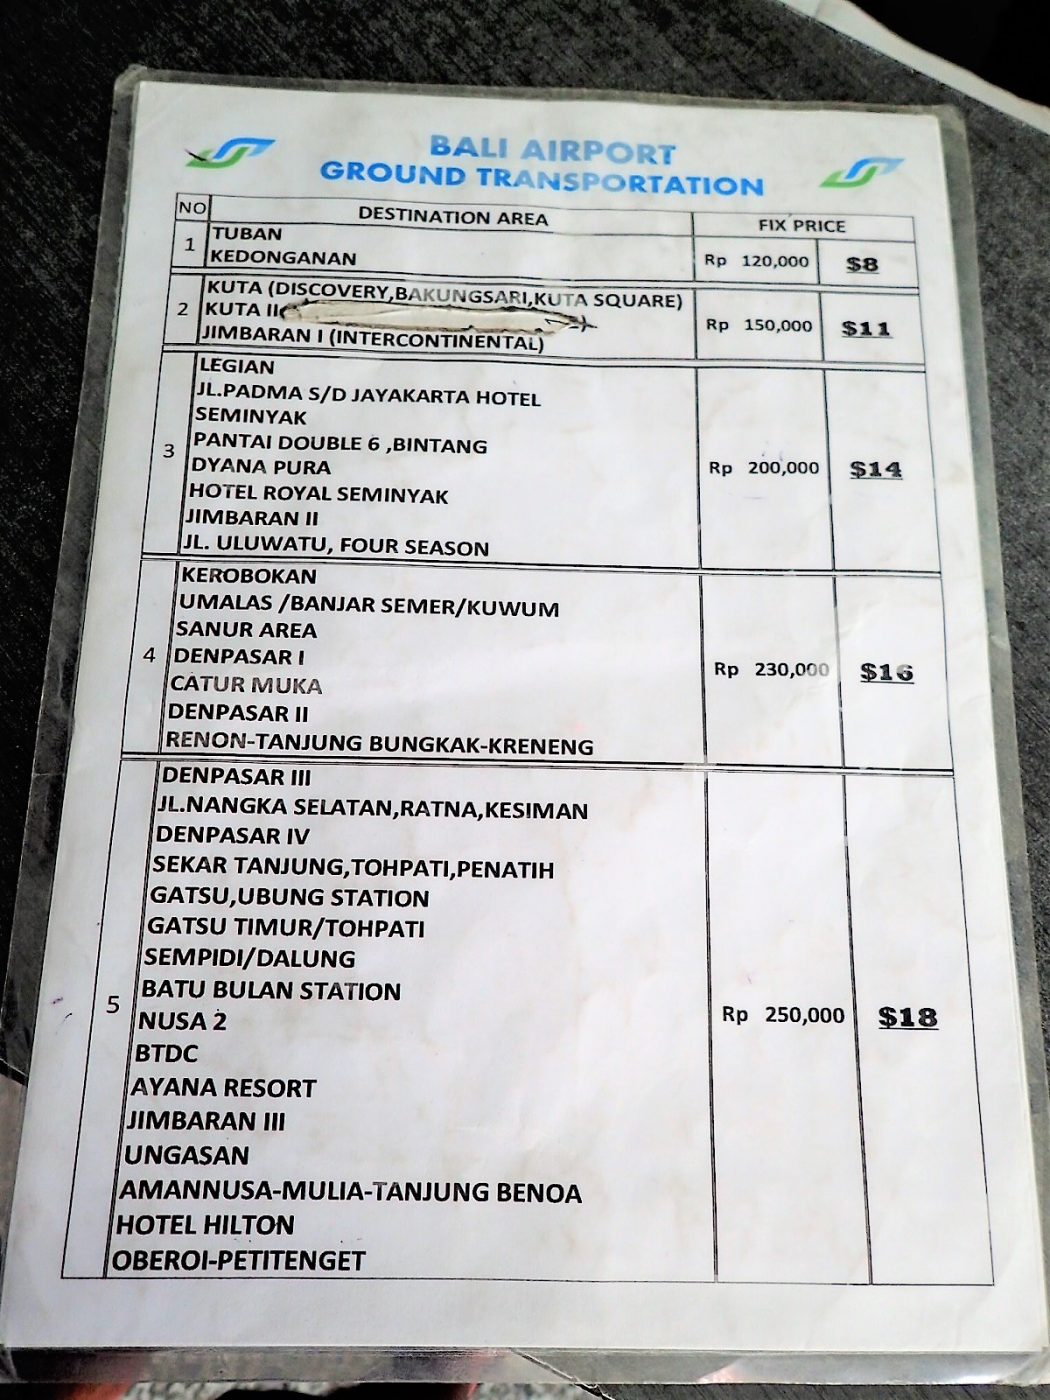 【2019年版】バリ島空港タクシーの基本情報と料金表